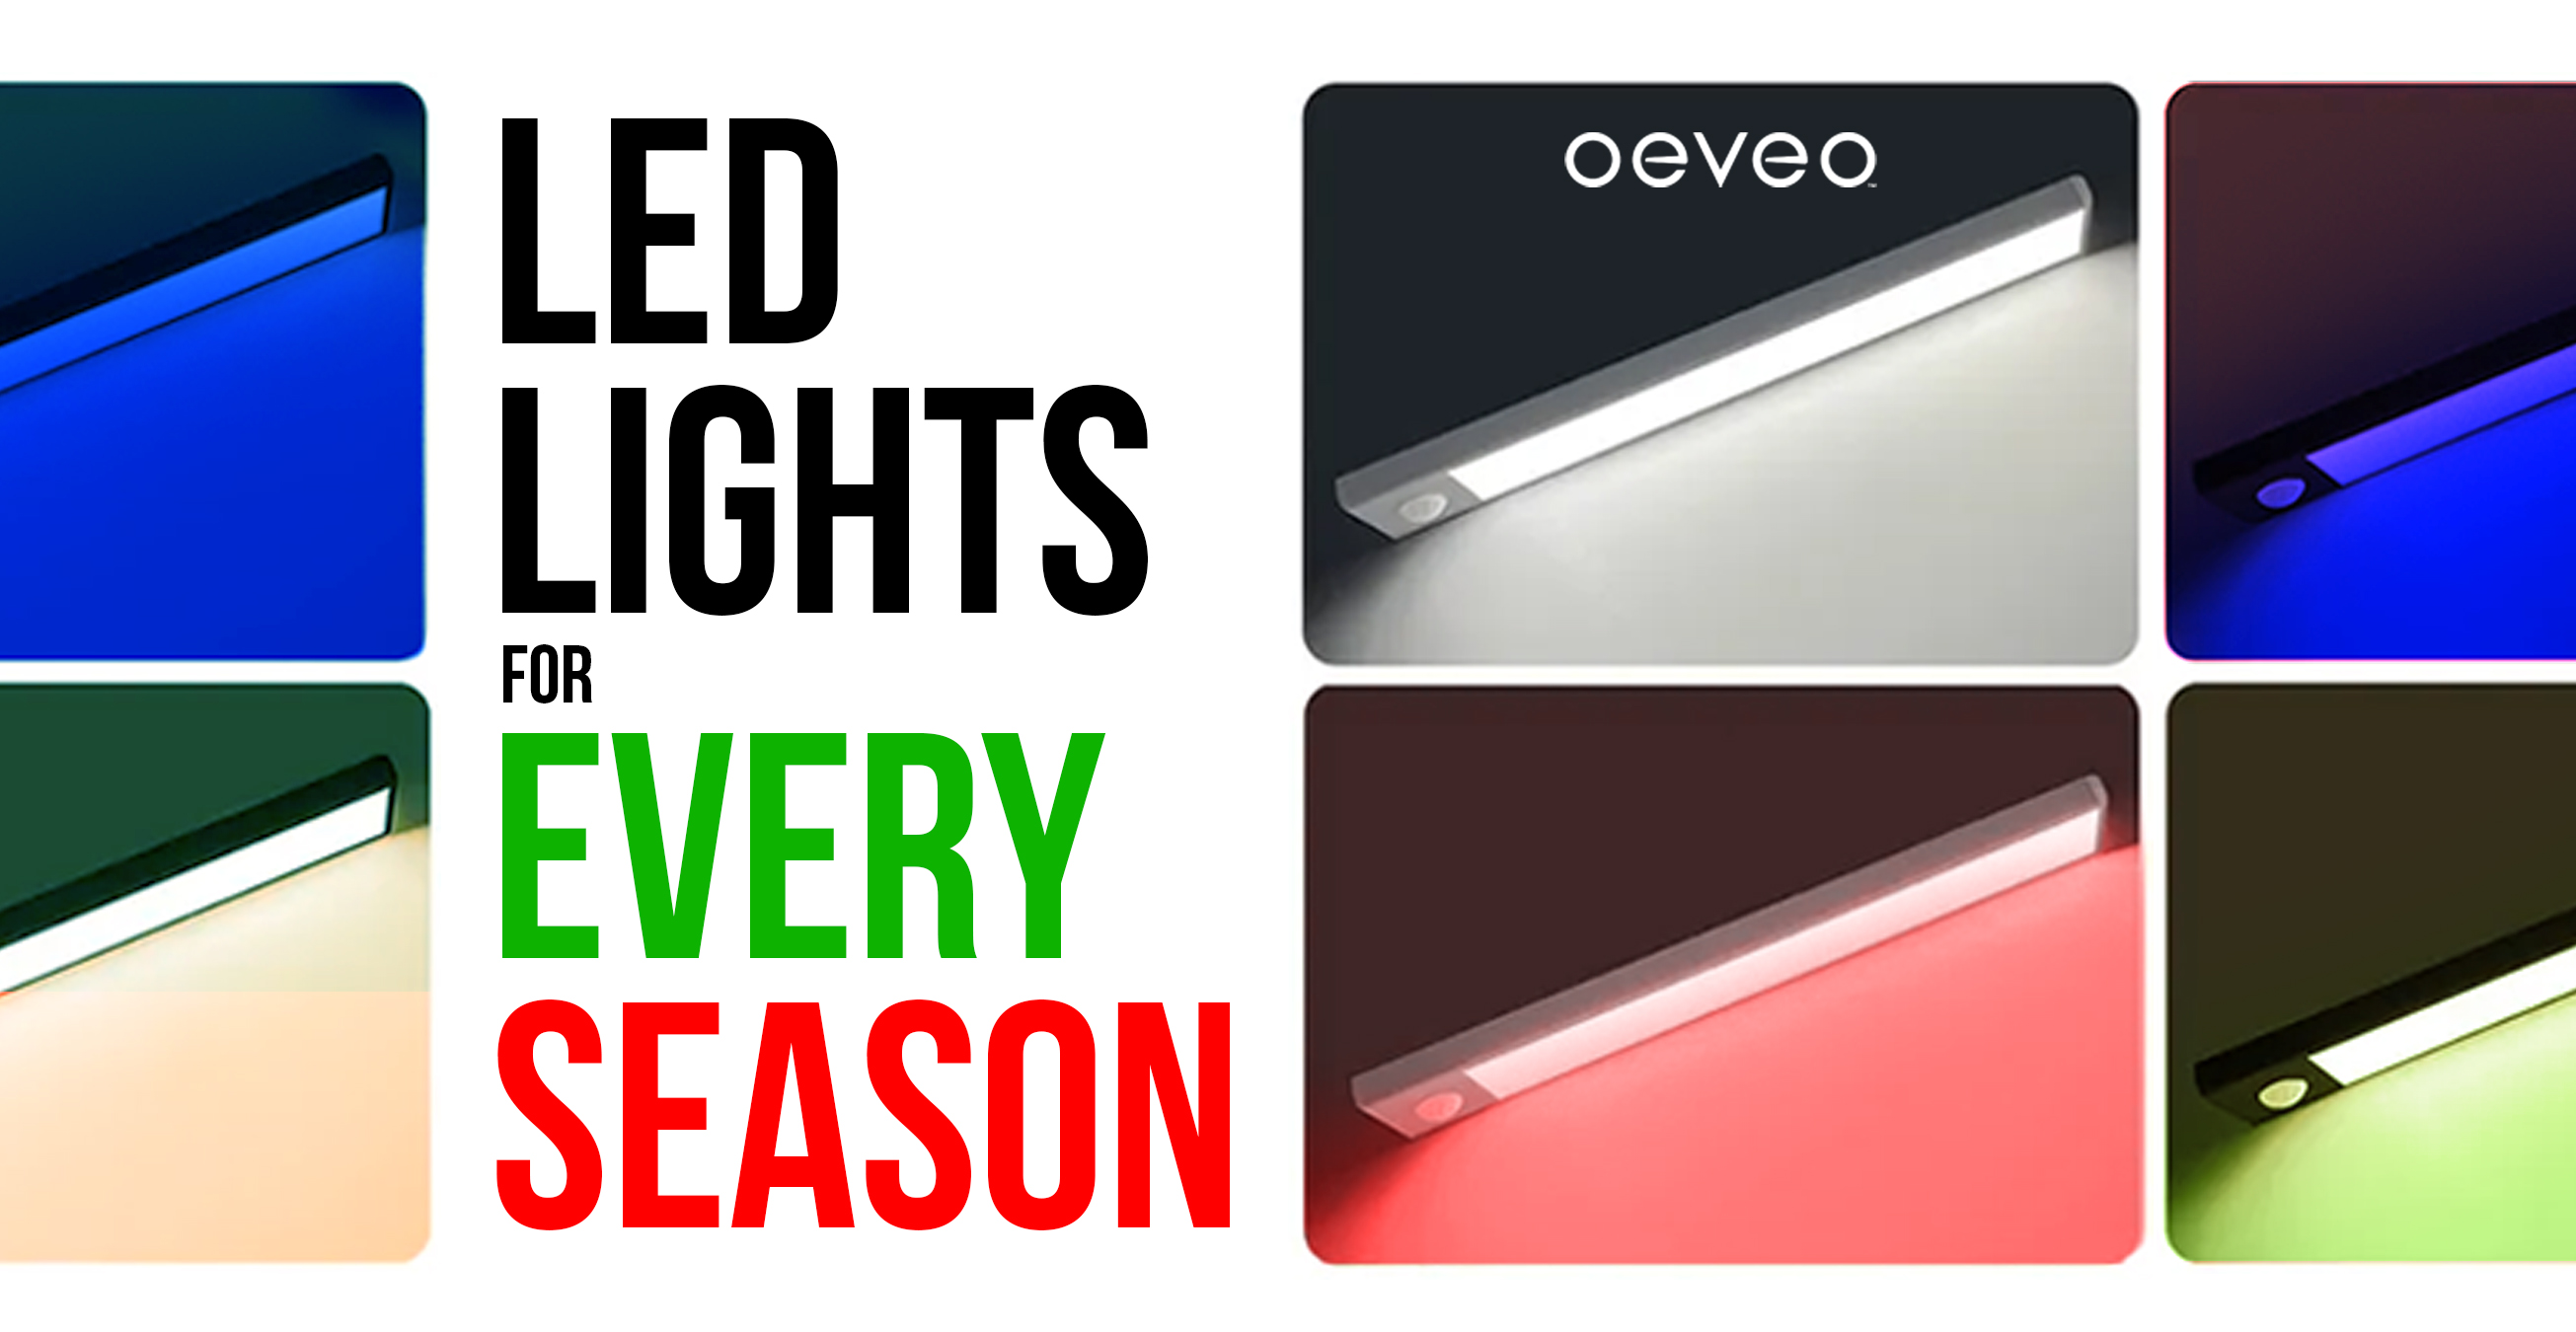 Oeveo LED Light Bars